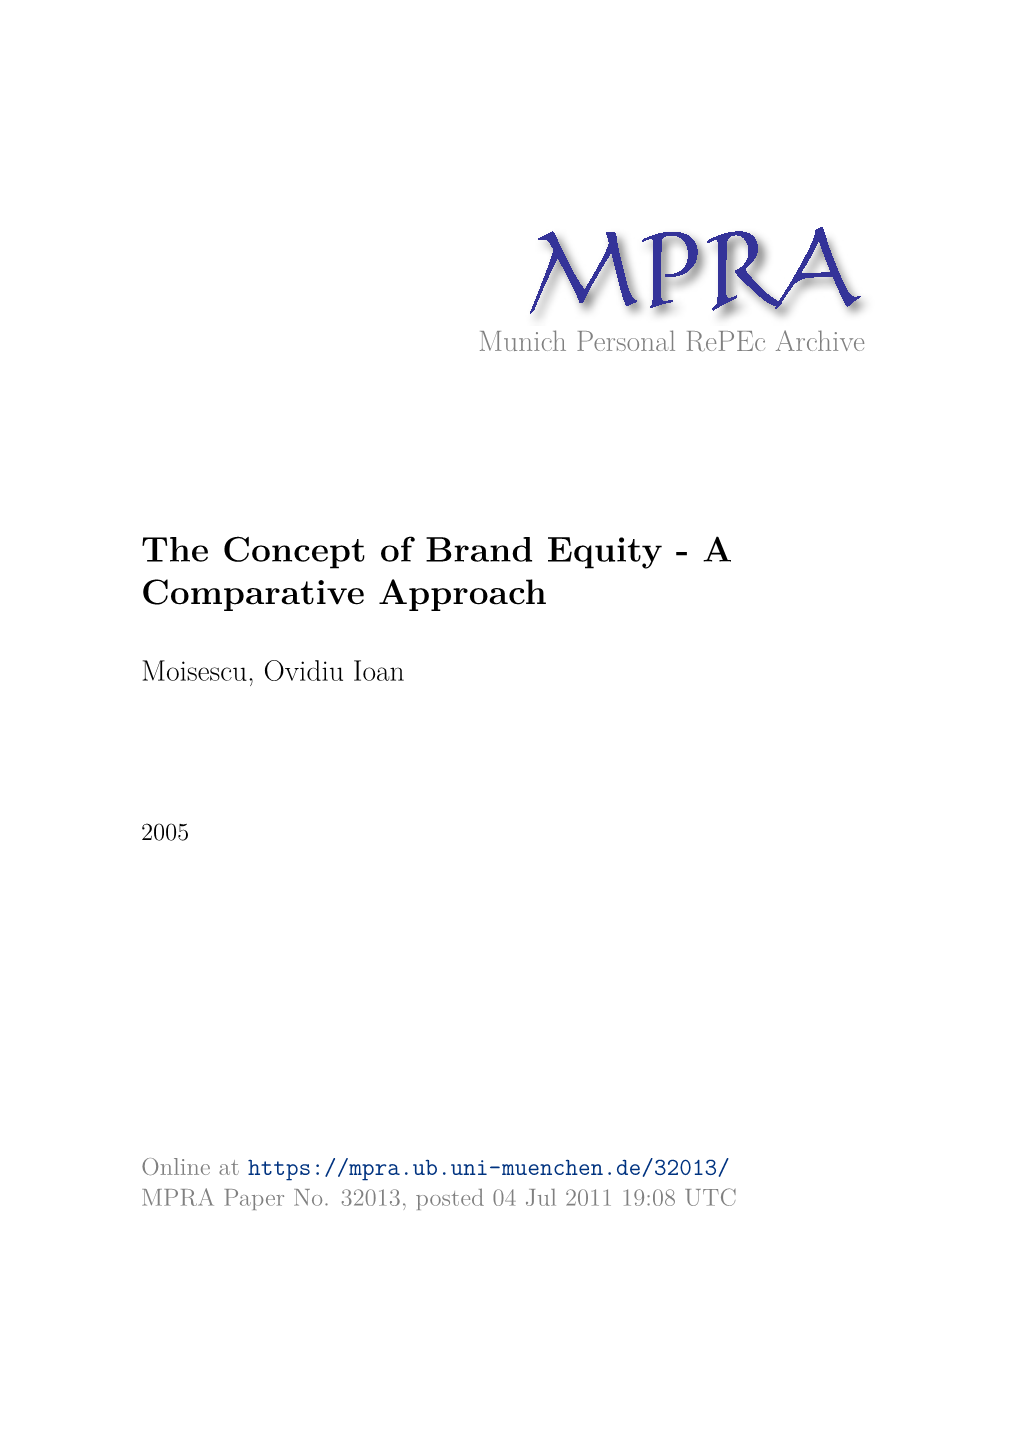 Ovidiu I. Moisescu, the Concept of Brand Equity